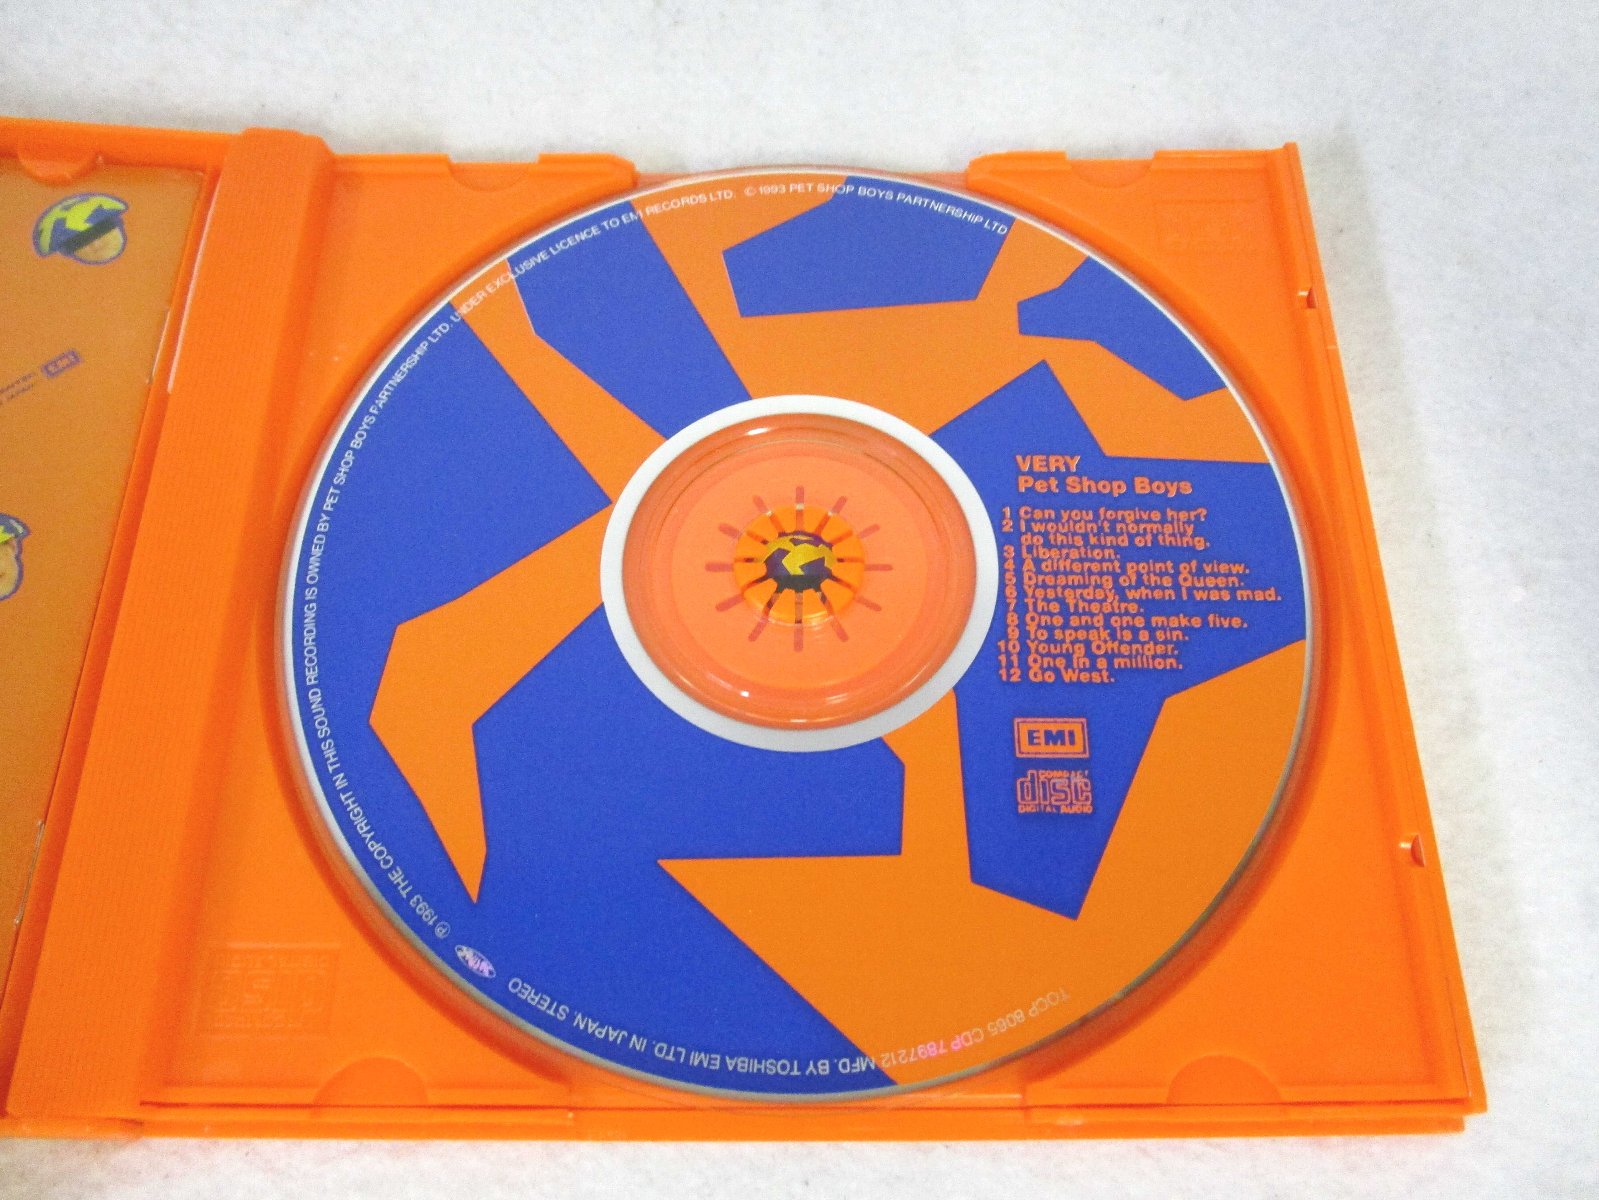 AC00450 【中古】 【CD】 ヴェリー/ペット・ショップ・ボーイズ